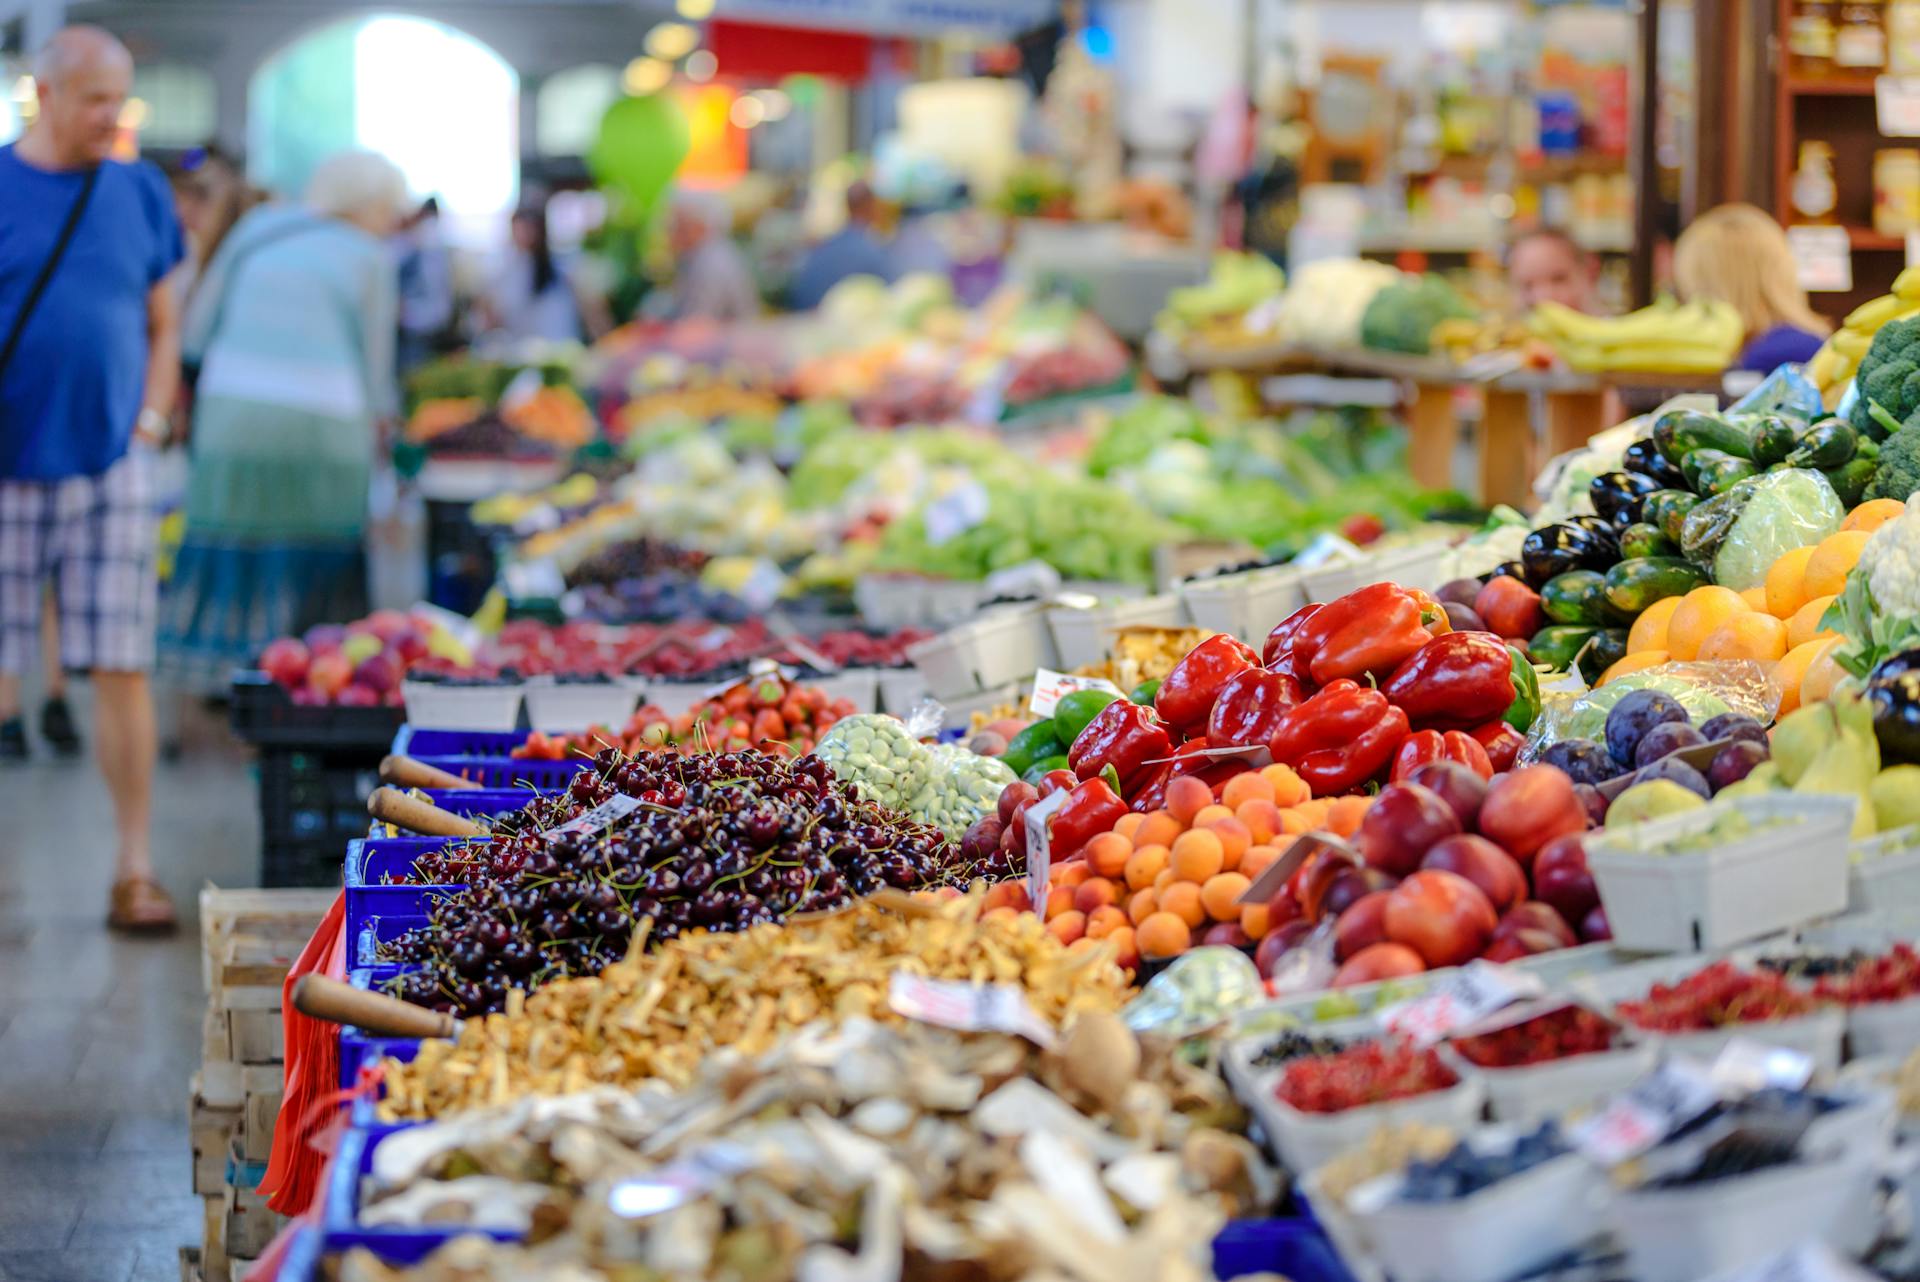 Gemüsestände in einem Lebensmittelladen | Quelle: Pexels